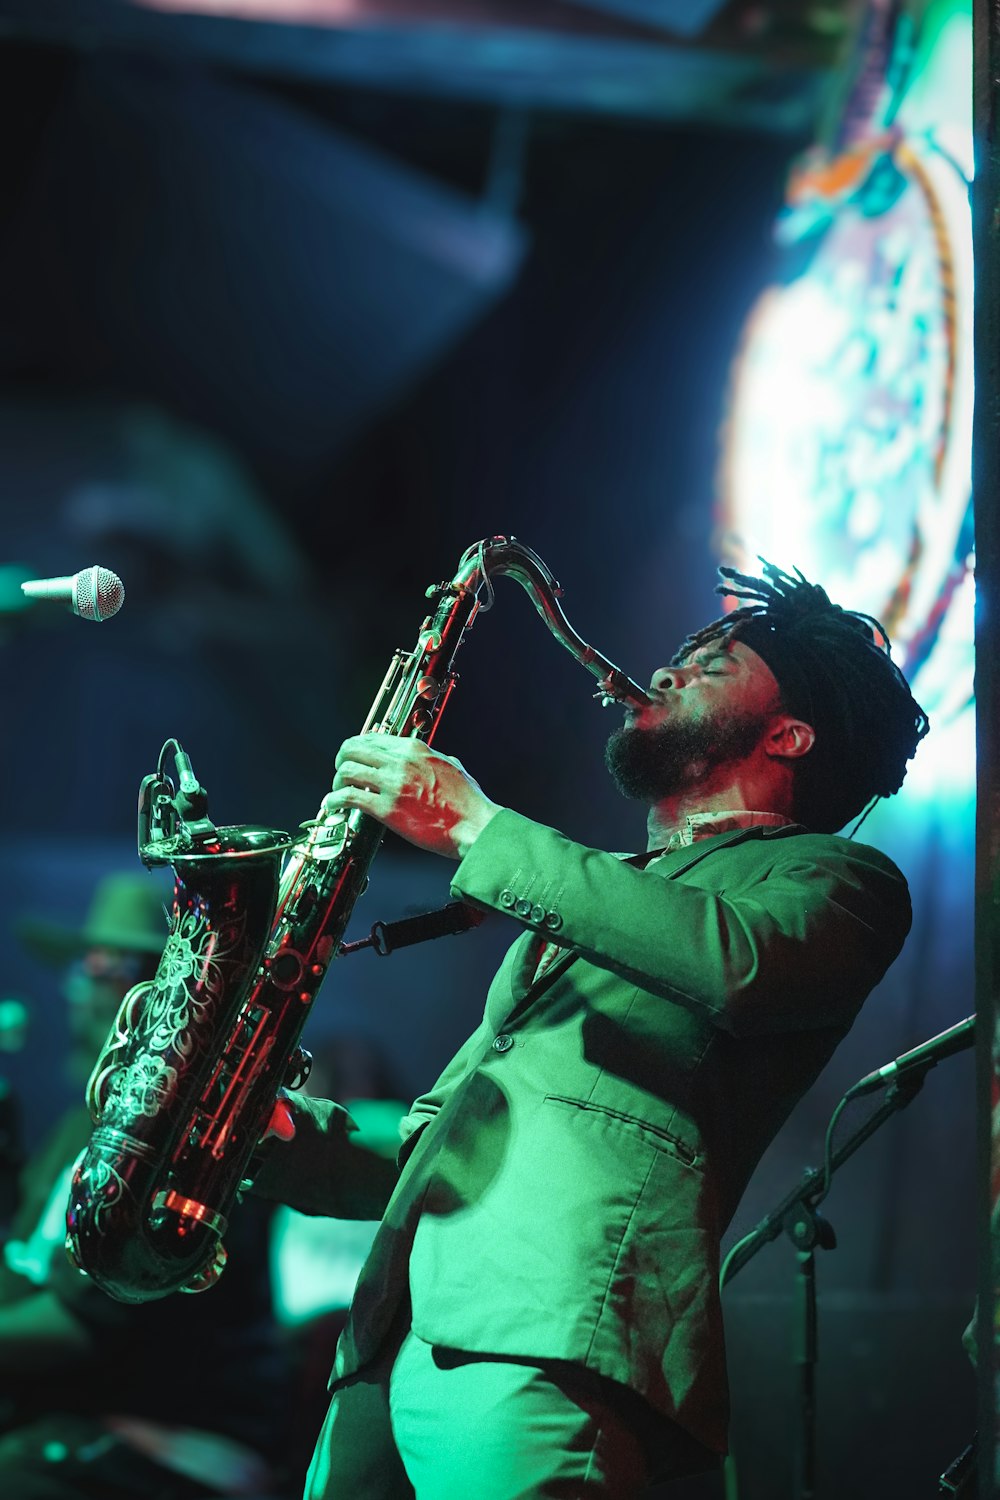 un homme en costume vert jouant du saxophone